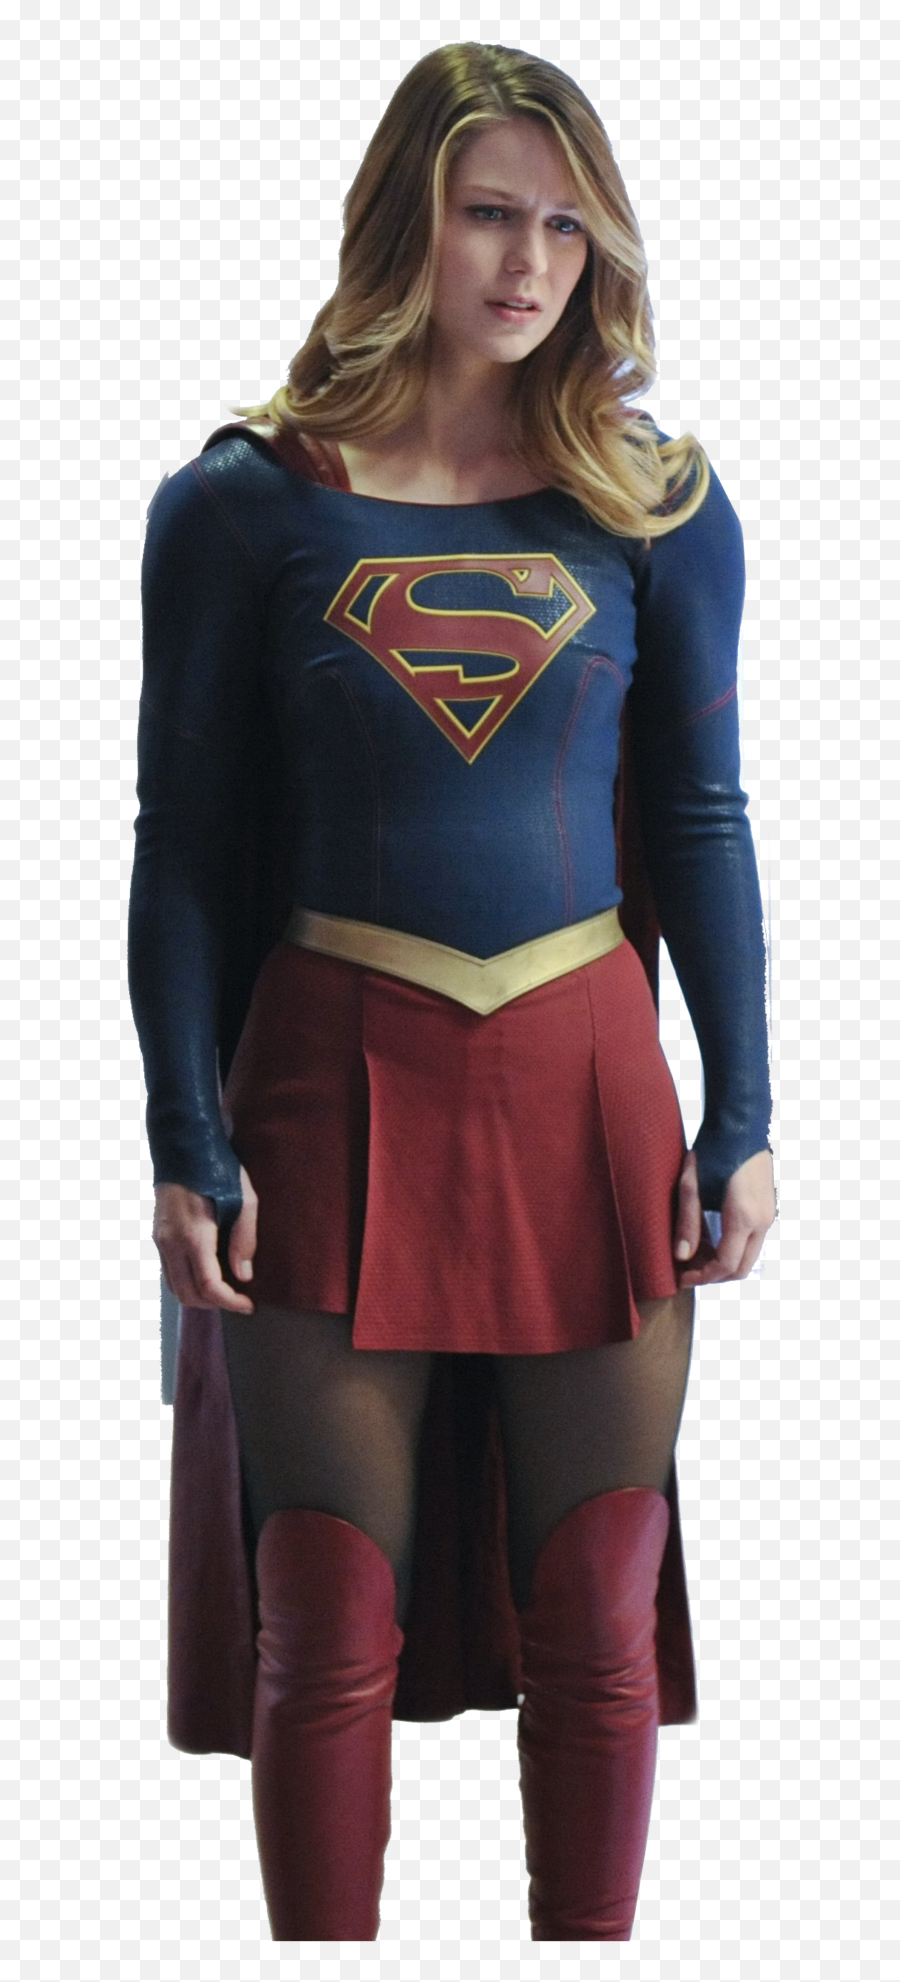 Supergirl Png - Supergirl Cw Png,Supergirl Transparent